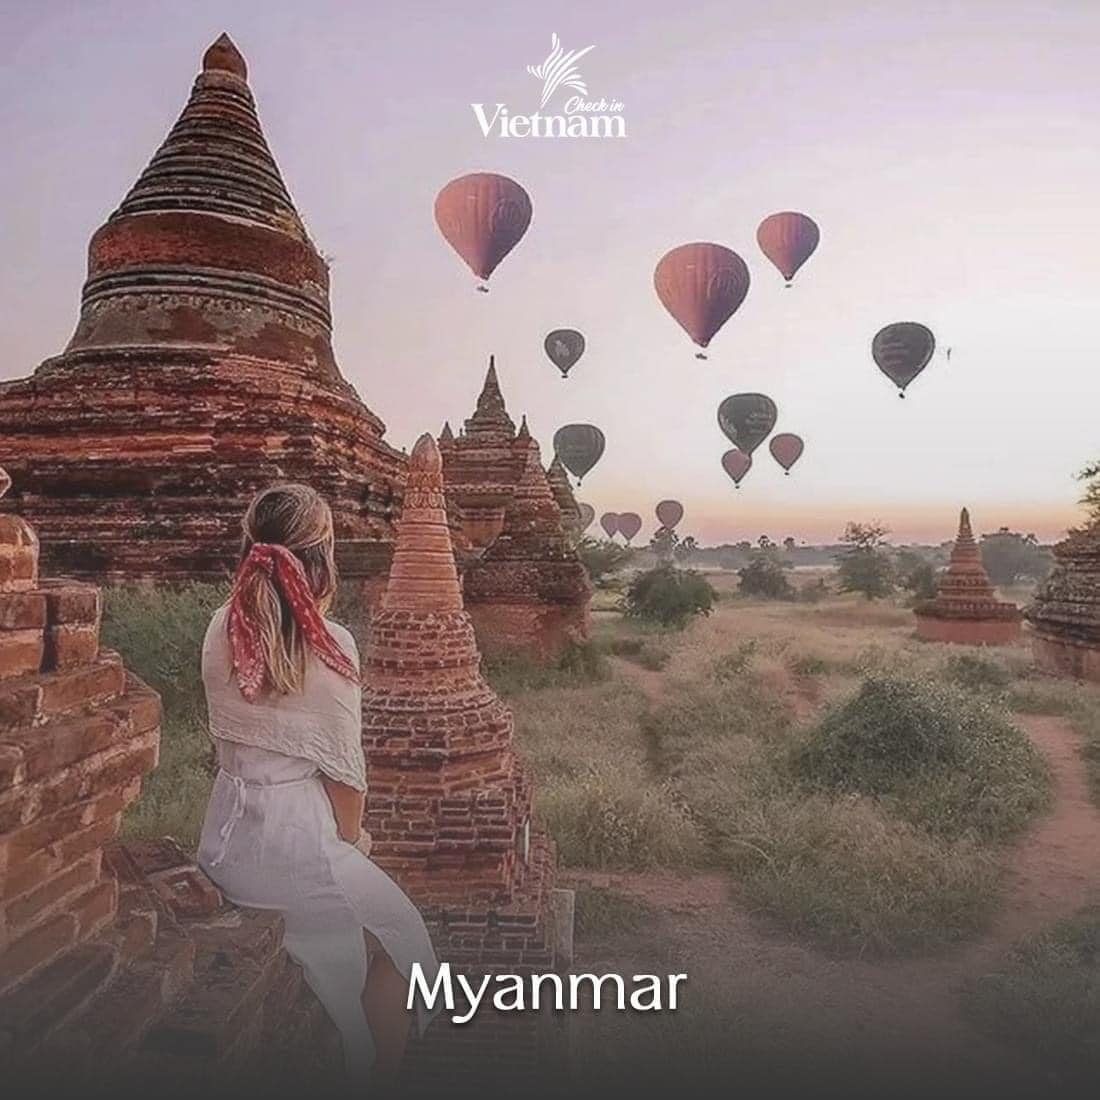 4. Myanmar